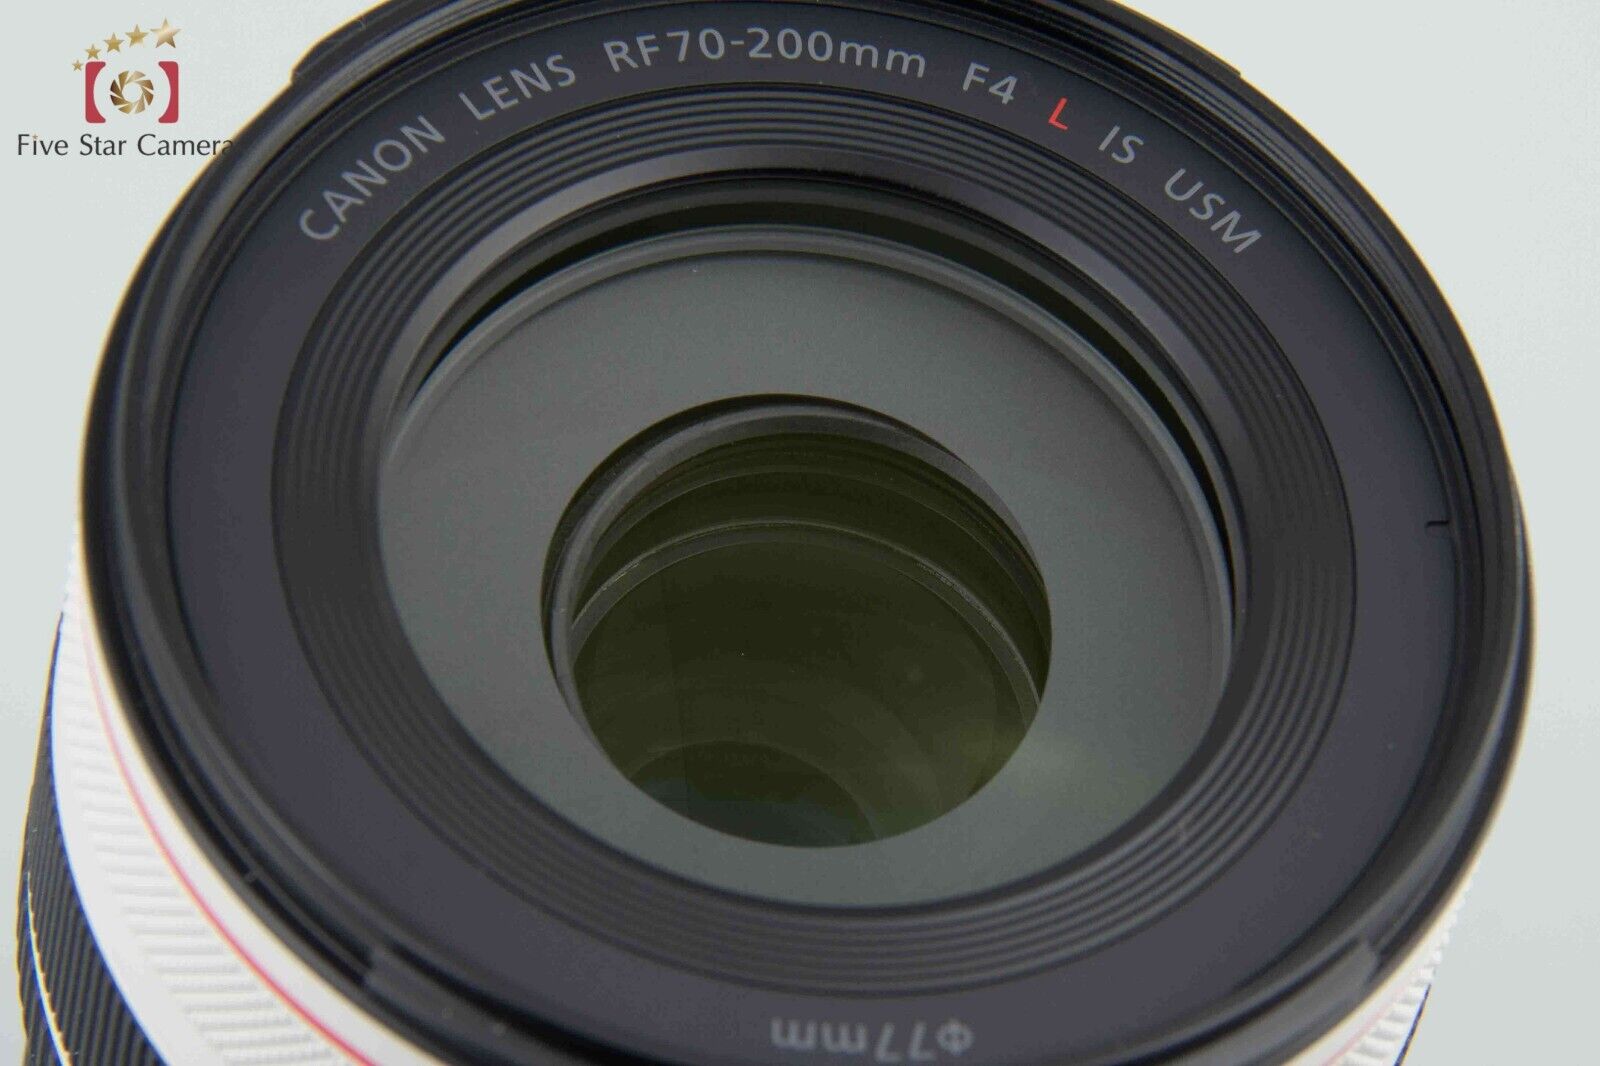 Mint!! Canon RF 70-200mm f/4 L IS USM w/ Box